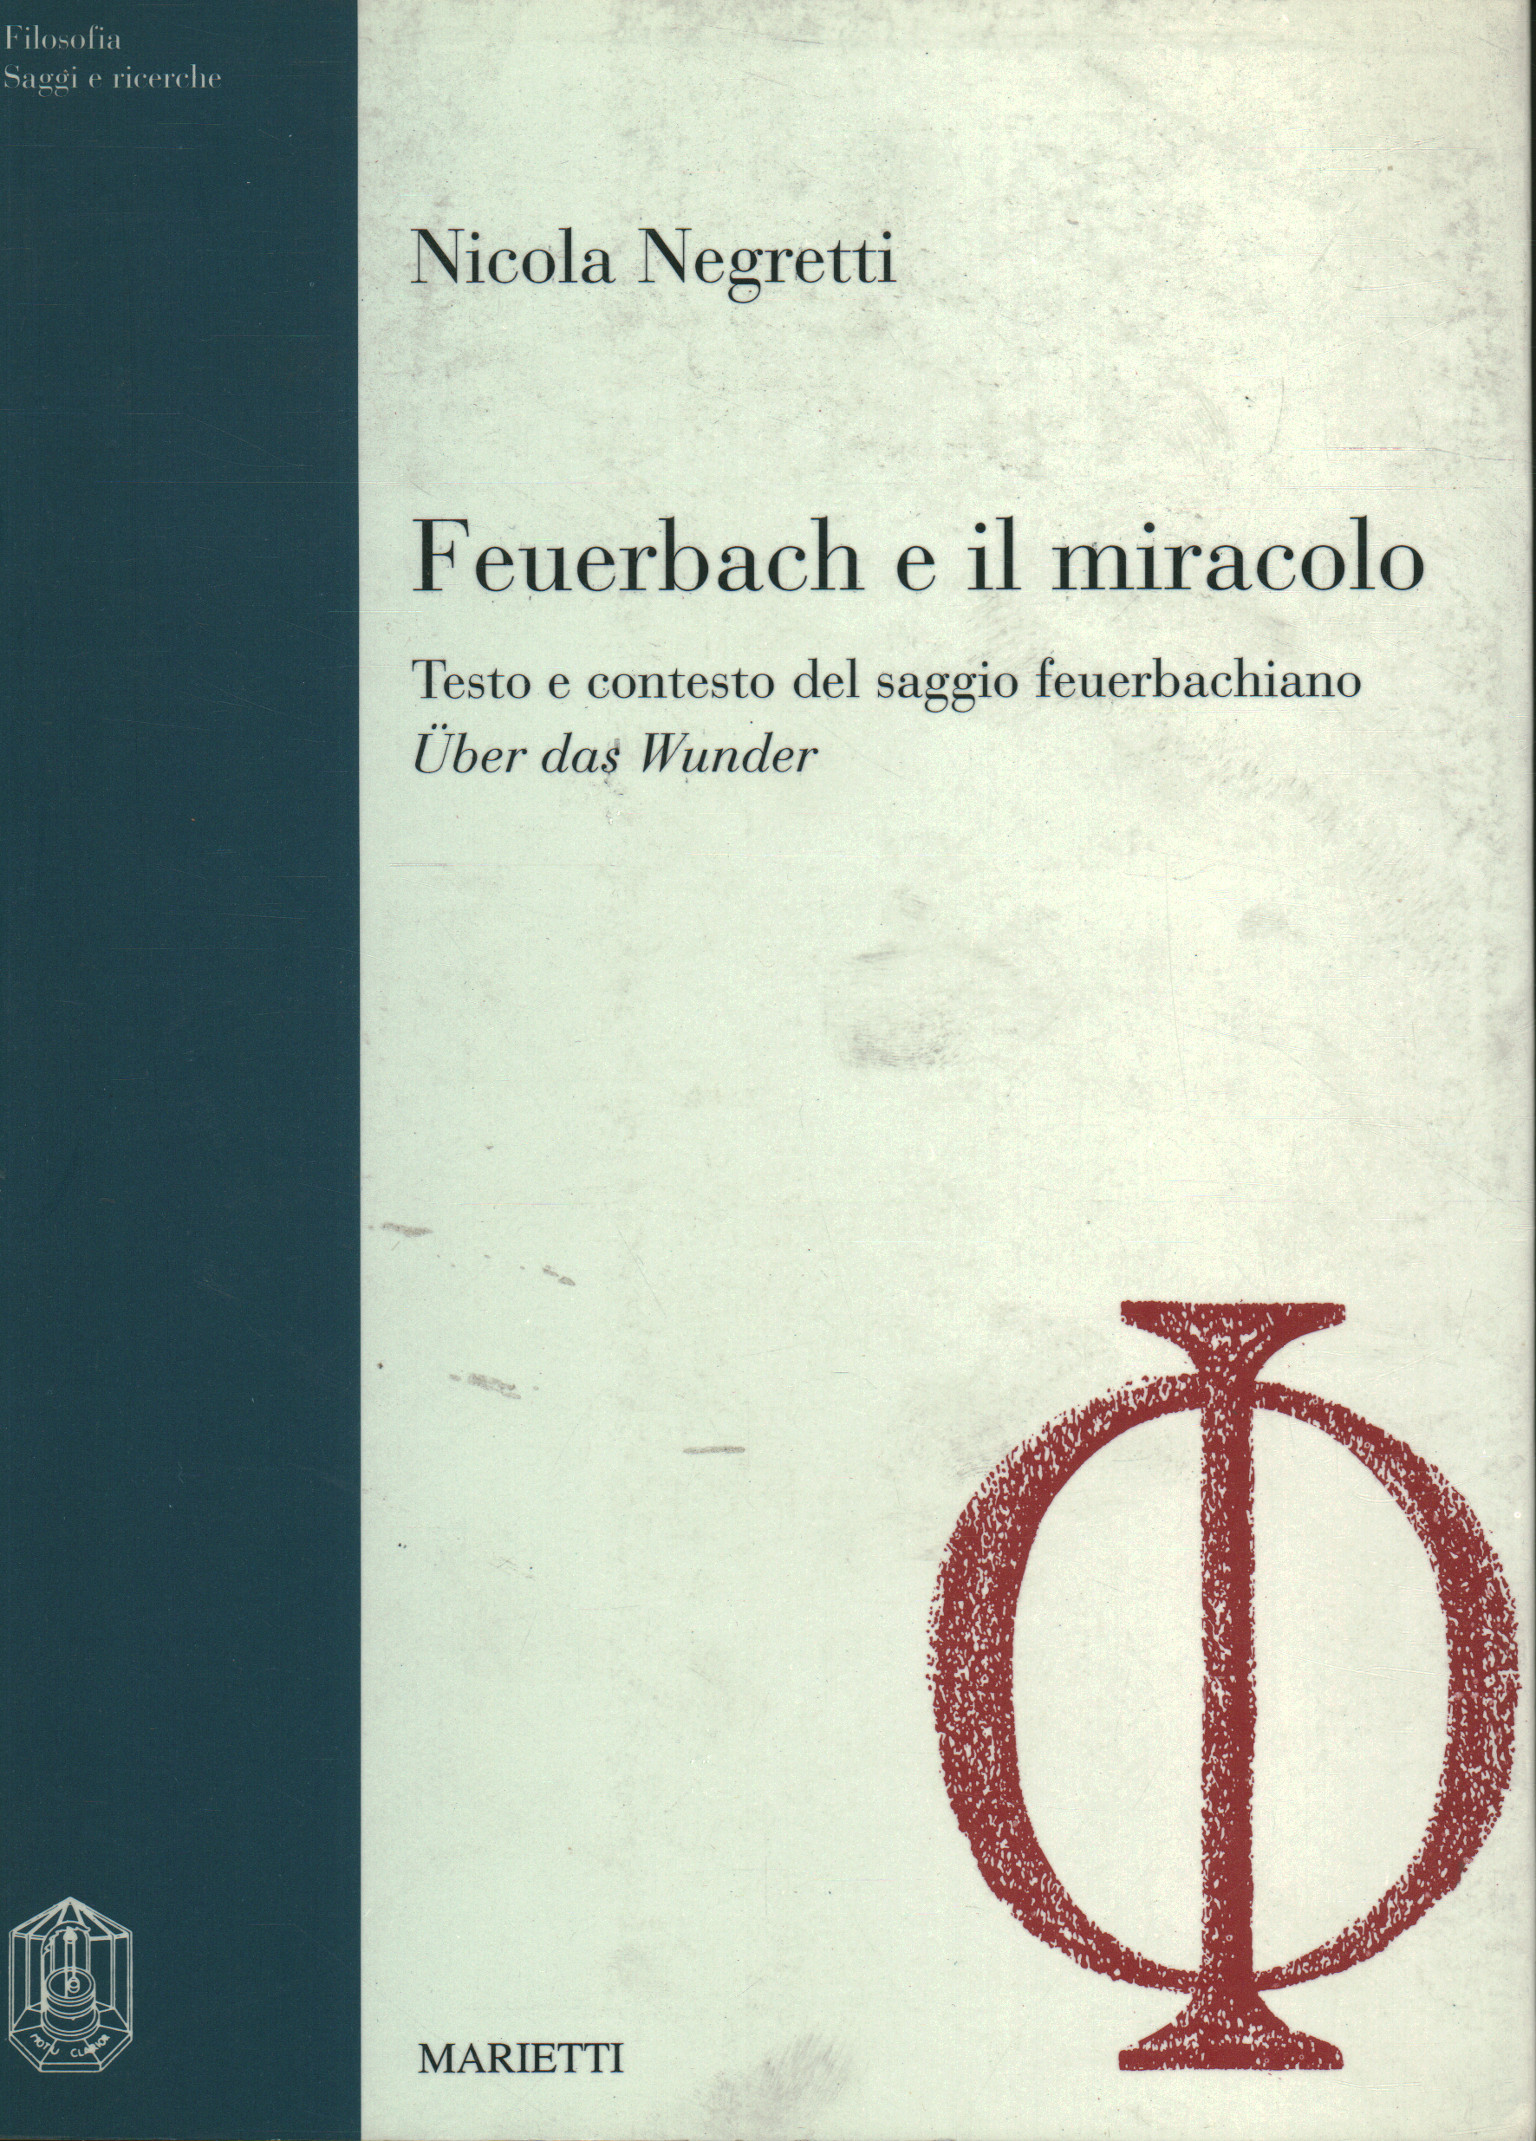 Feuerbach und der wunder, Nicola Negretti